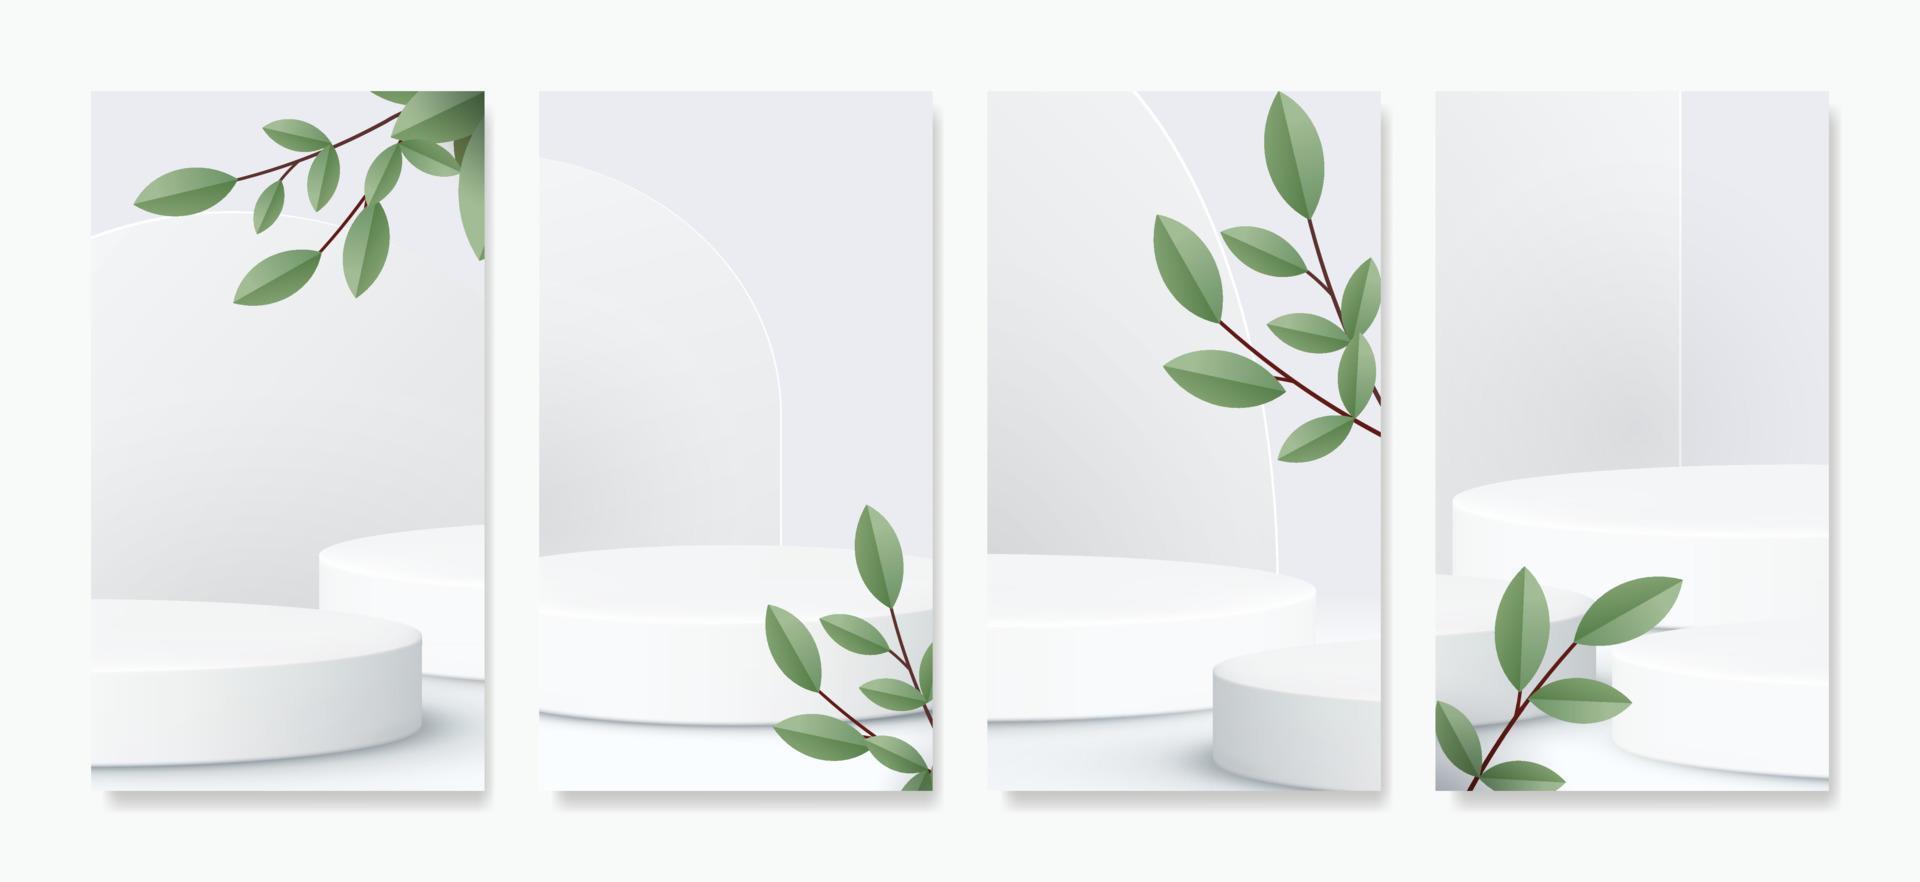 ein modern, minimalistisch Szene mit geometrisch Formen und ein Weiß Podium zum präsentieren Produkte, Erstellen Modelle, und Anzeigen Kosmetika. vektor